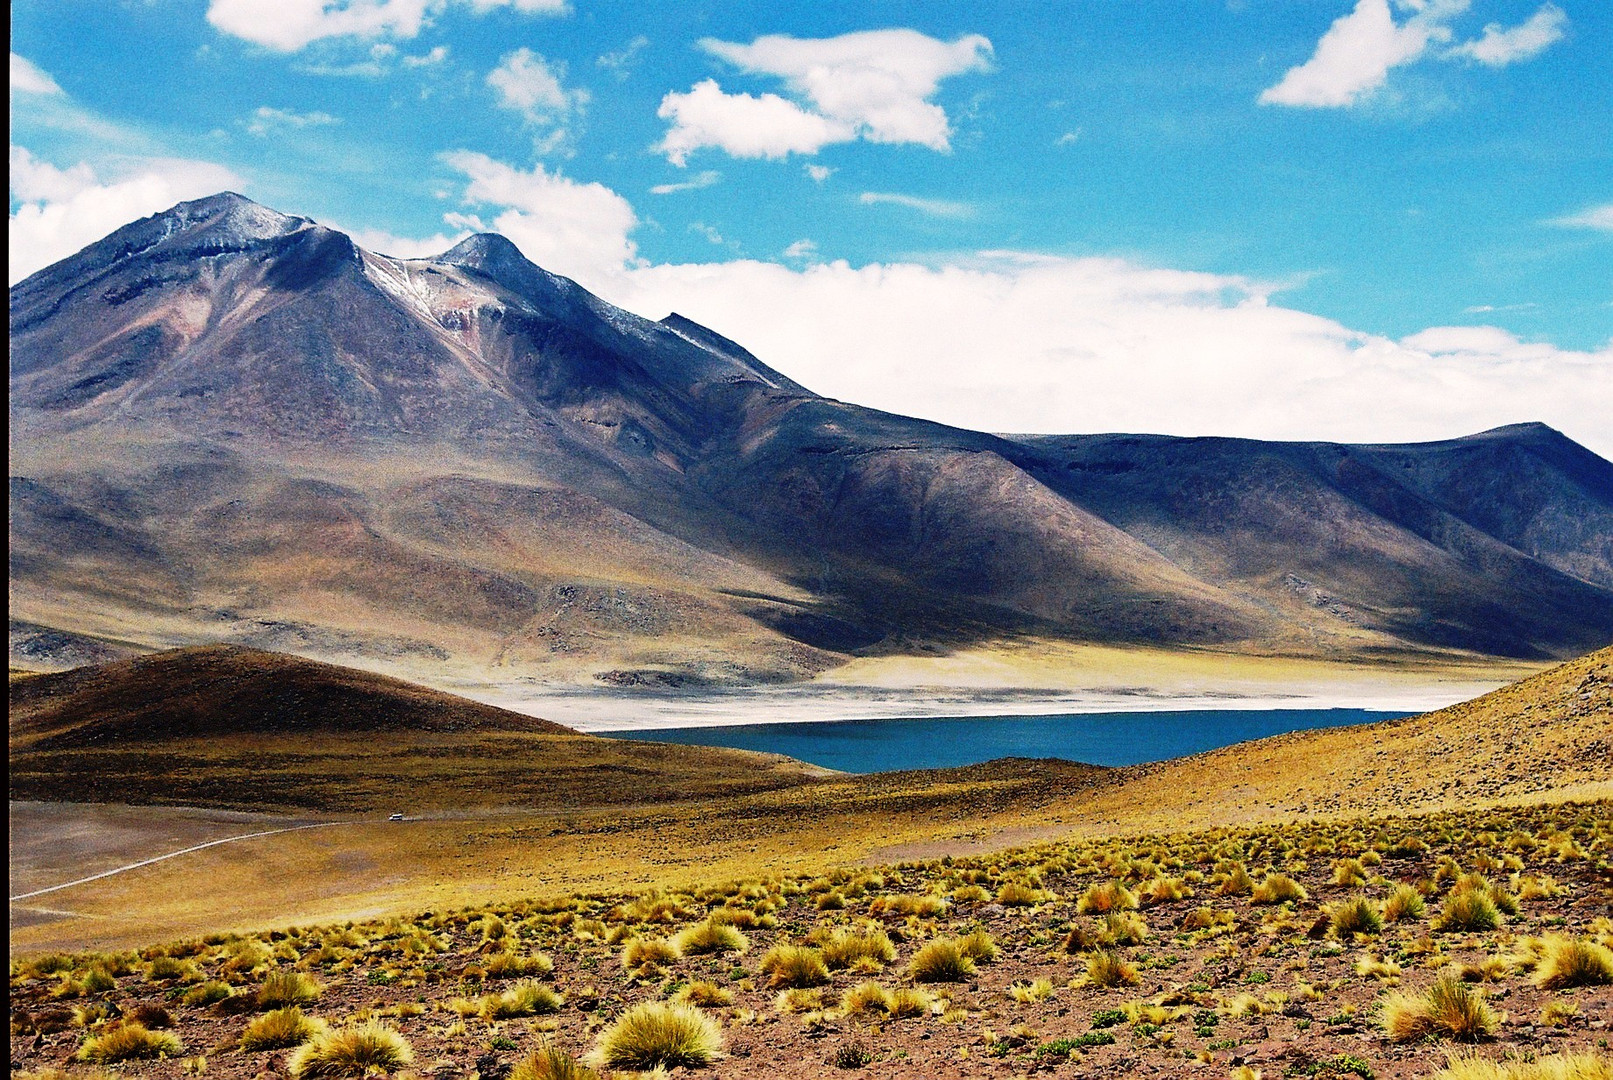 Salzsee in der Atacamawüste